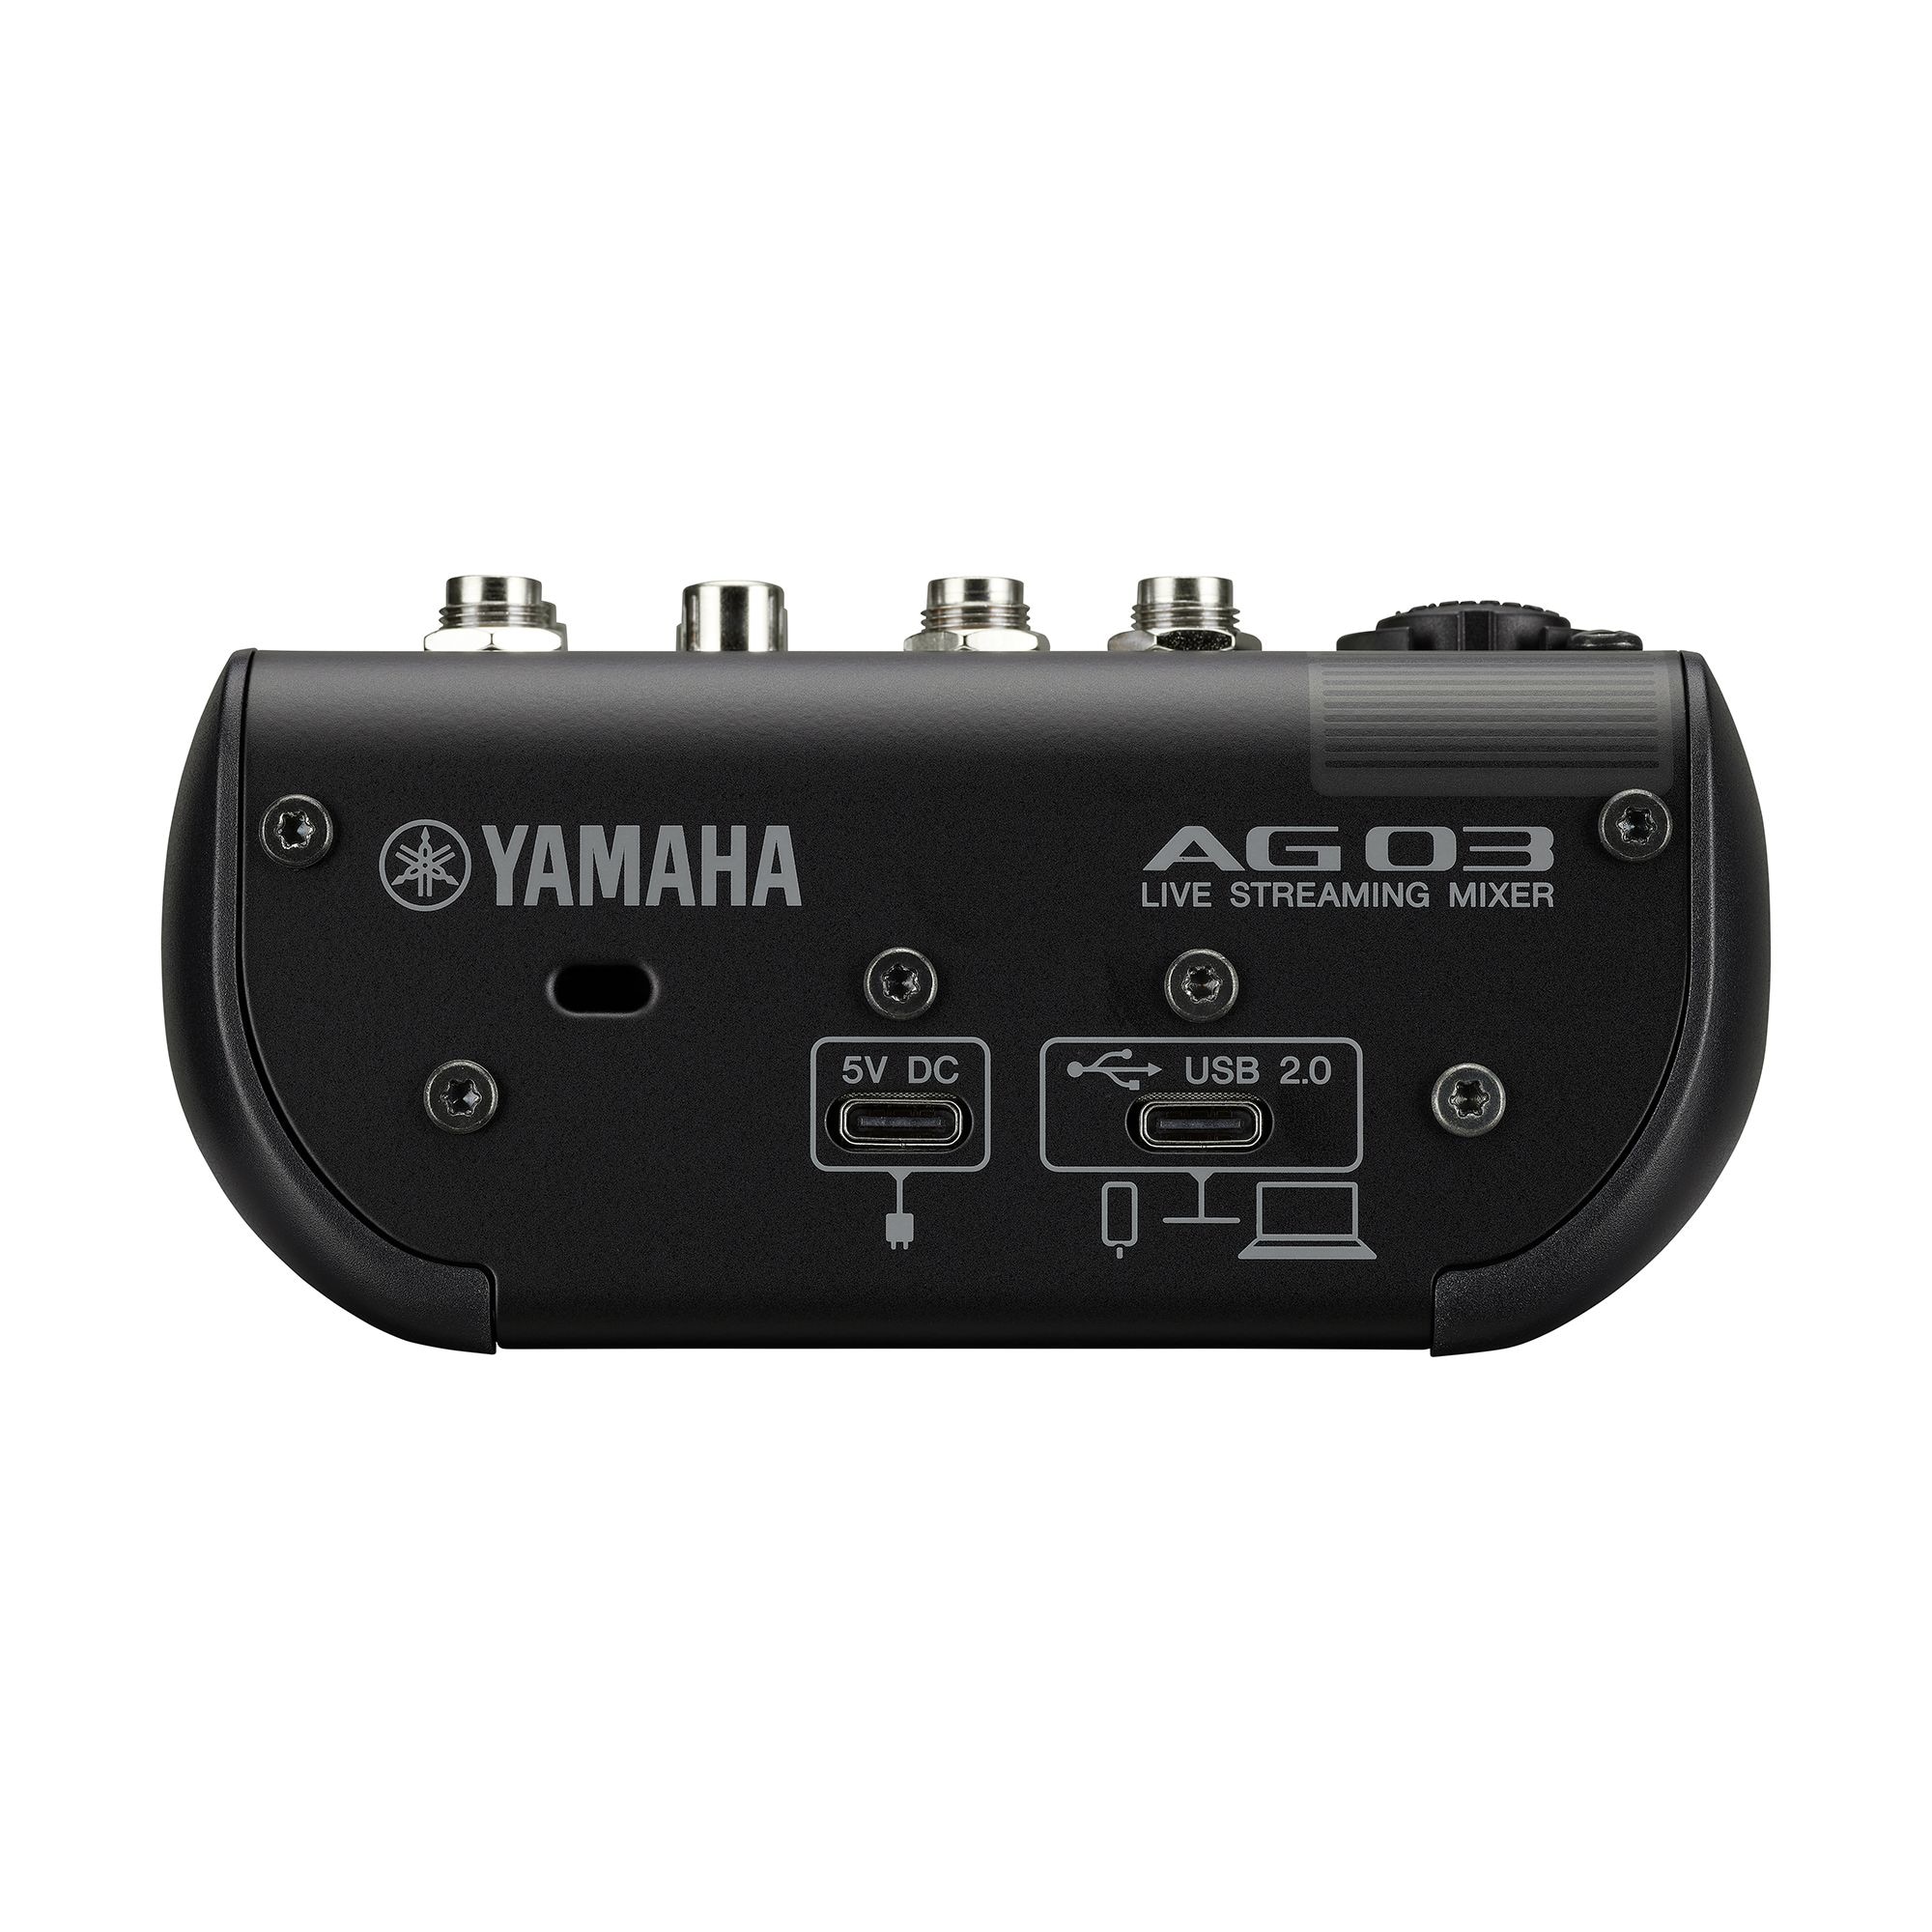 AG03MK2 3-Channel USB Mixer Manual & Driver - Yamaha USA